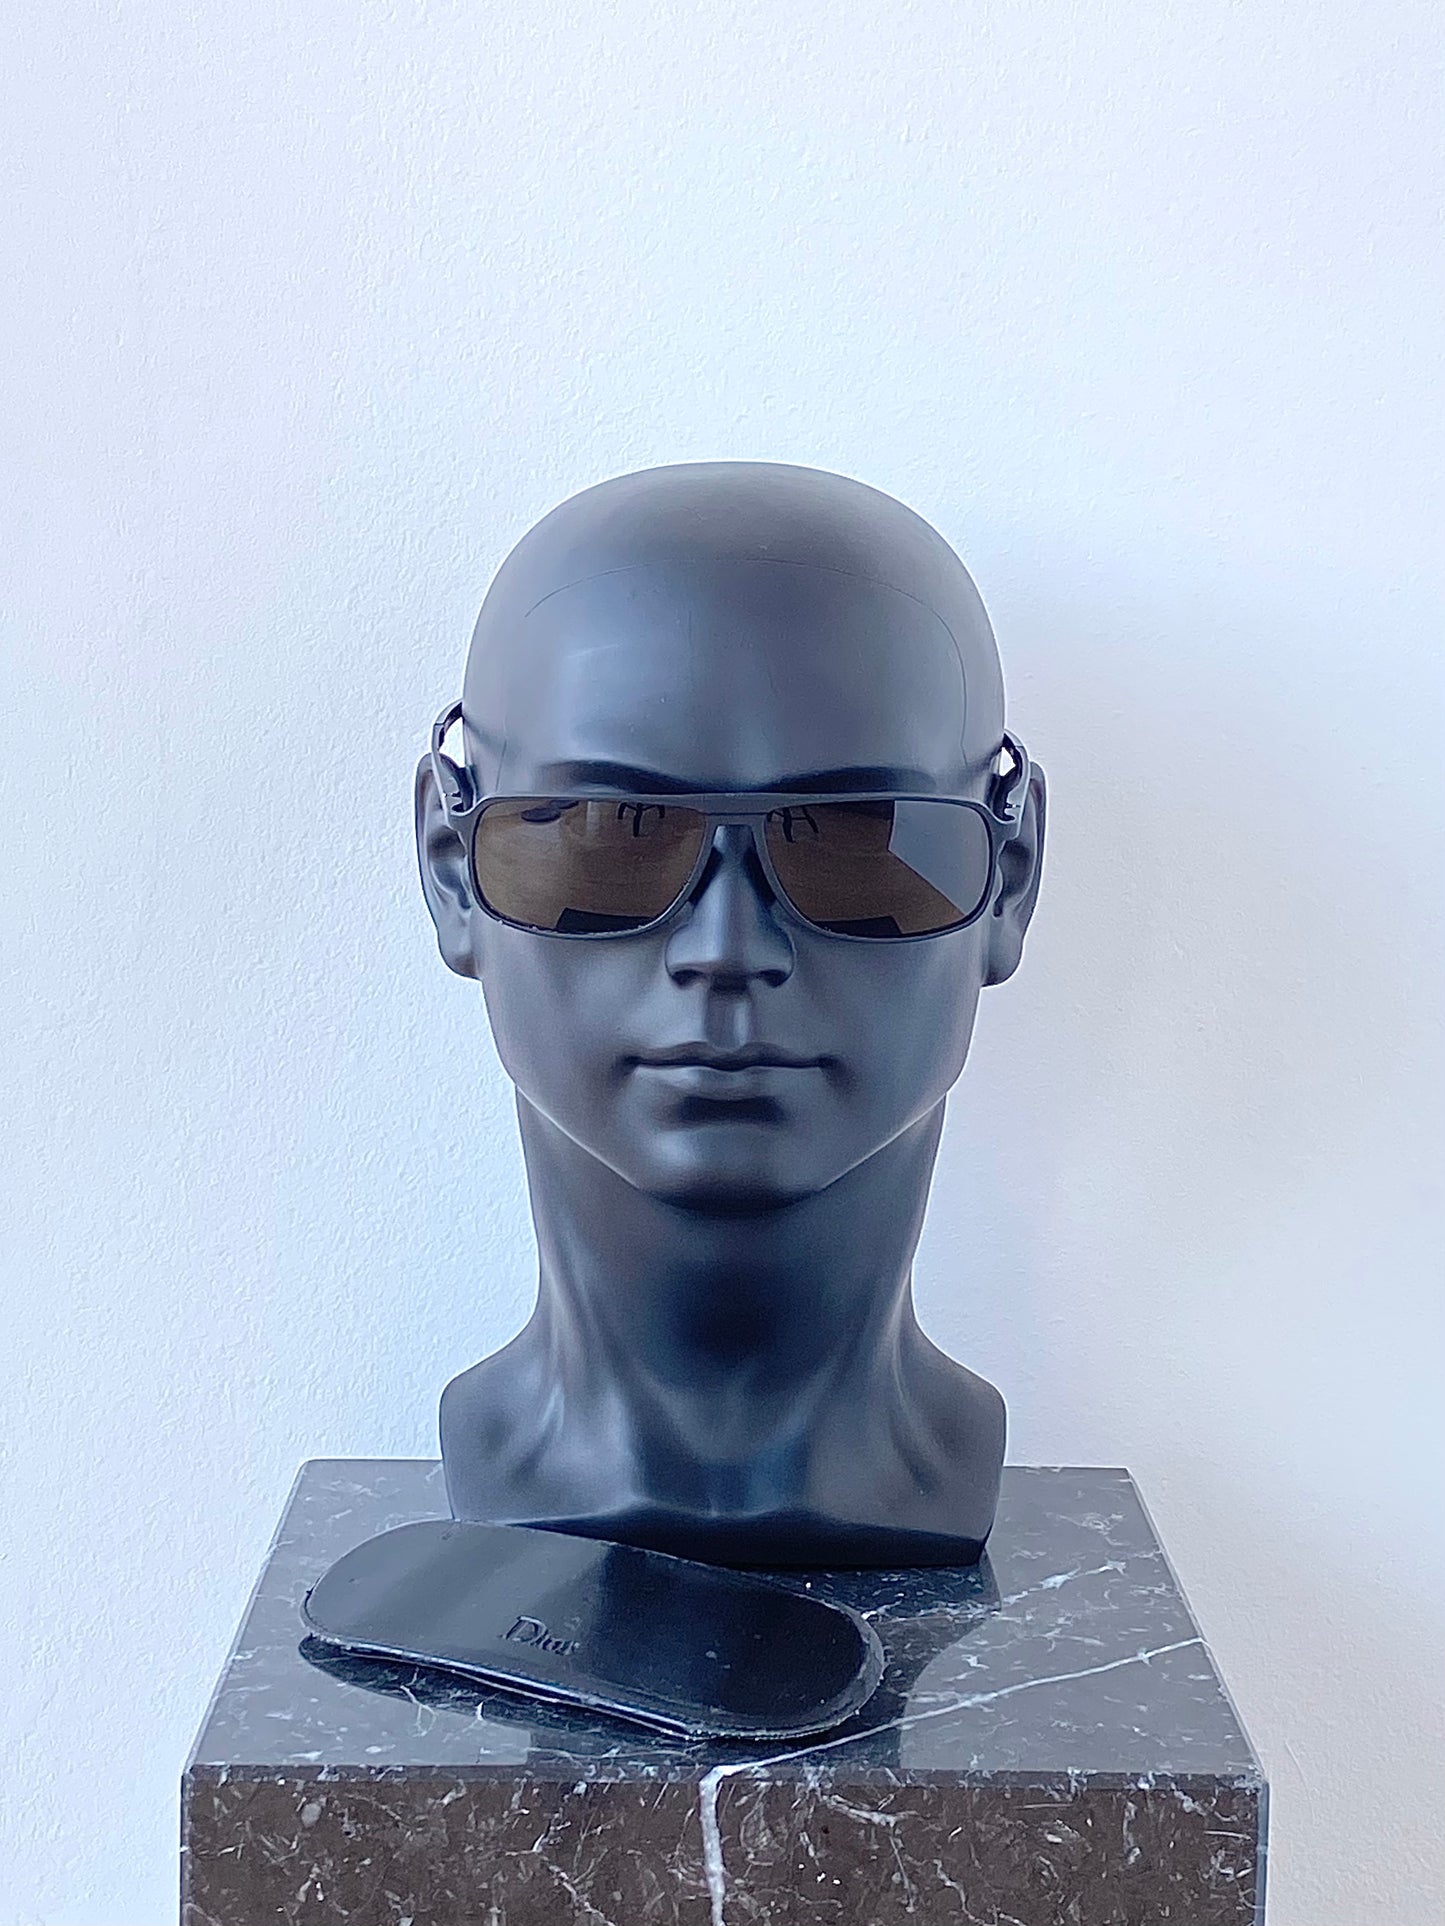 Dior Homme 2000 « Aluminium » Black/Brown Sunglasses